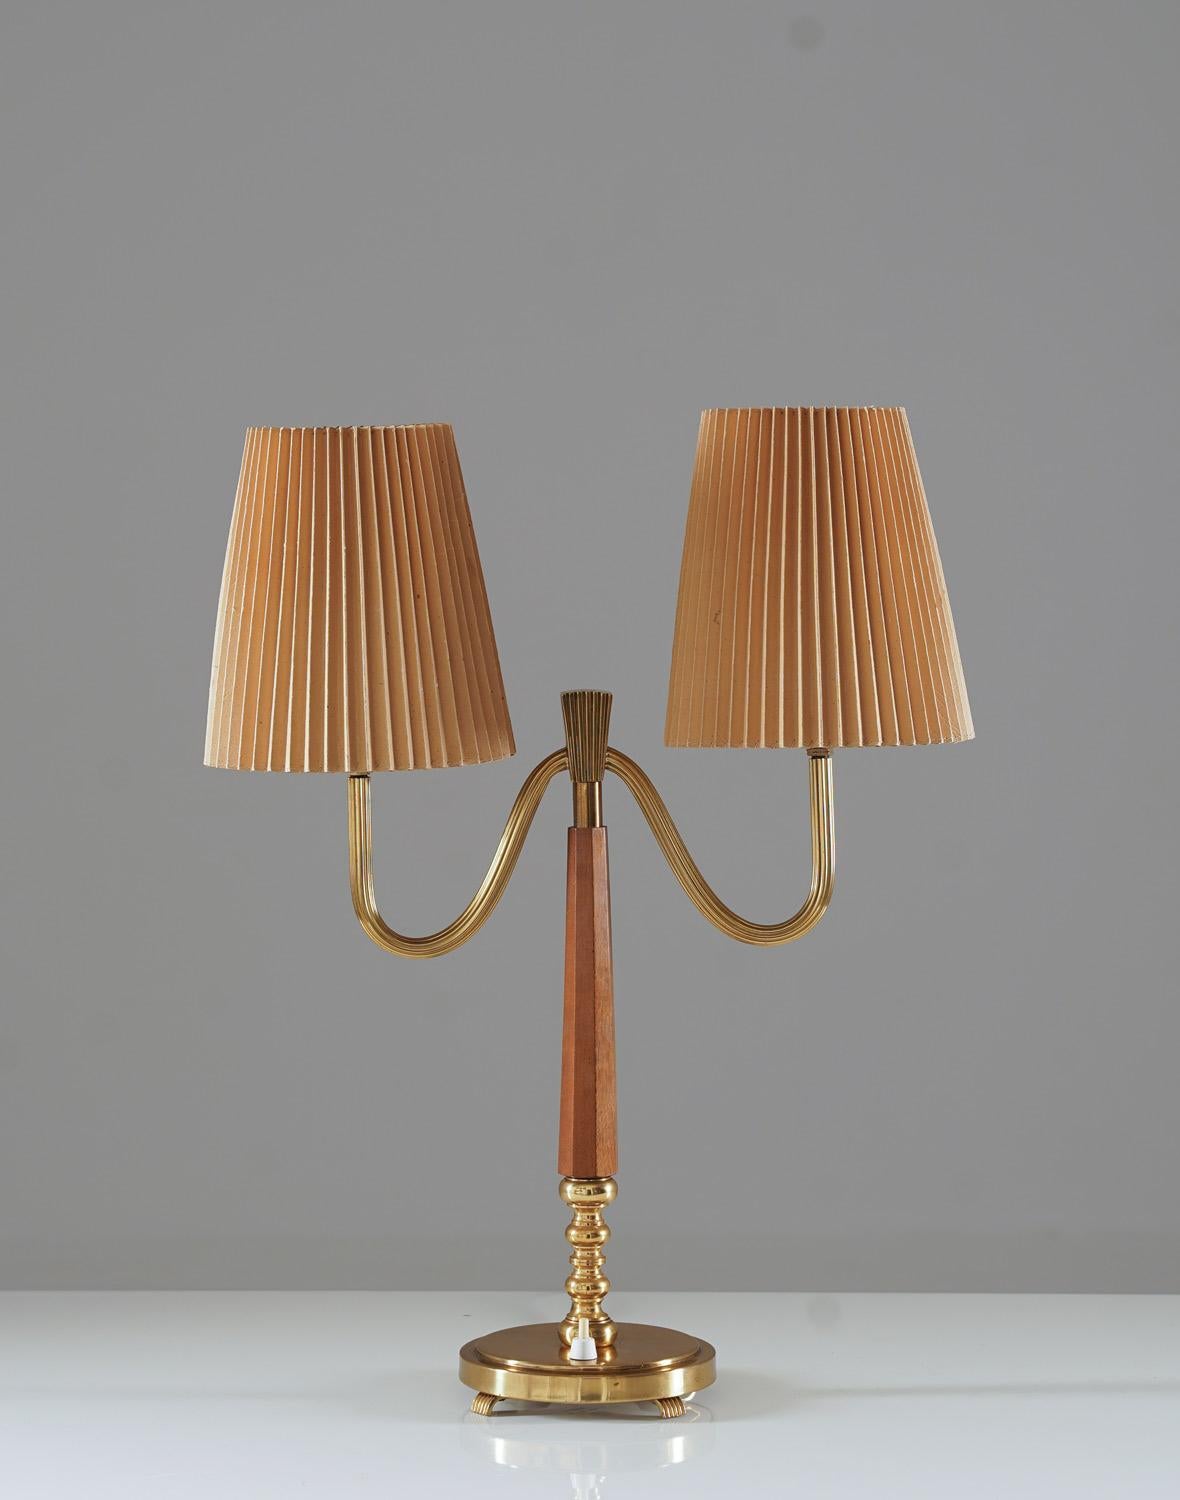 Lampe de table moderne suédoise modèle 15455 de Böhlmarks Lampfabrik.
Cette lampe comporte deux sources lumineuses, cachées par des abat-jours en papier plissé reposant sur des disques en verre dépoli. 

État : très bon état. Les abat-jours ne sont